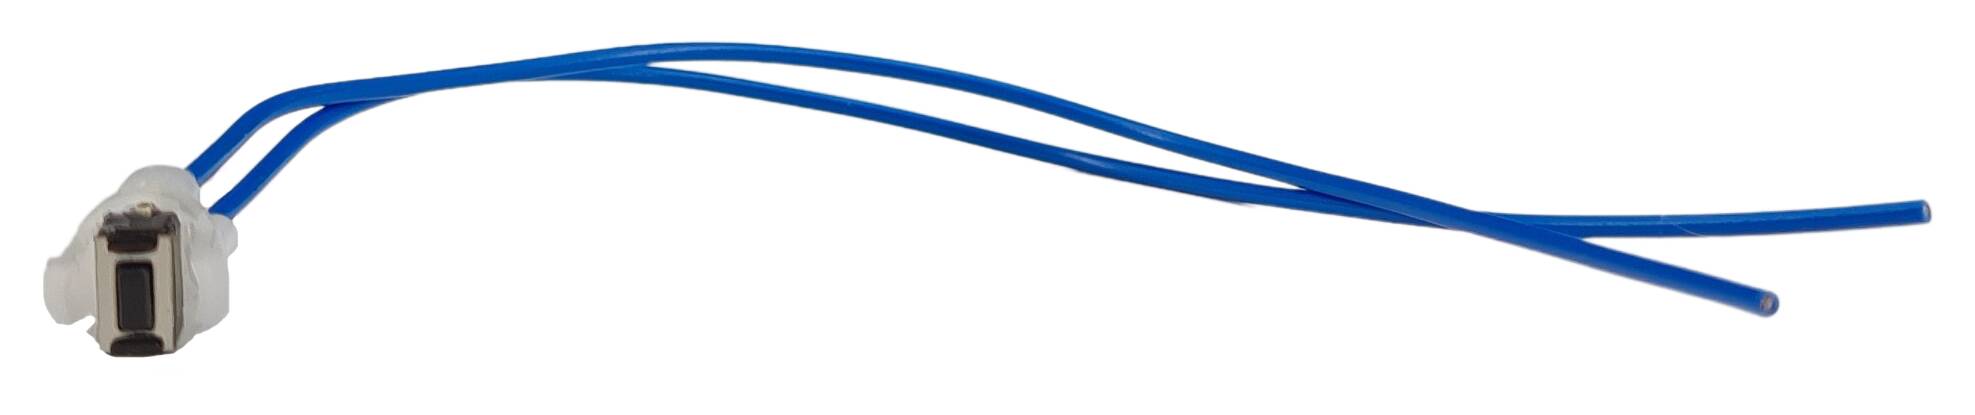 Taster f. Pouls-Dimmer m. Kabel 150 mm lg mit Kugel. blau